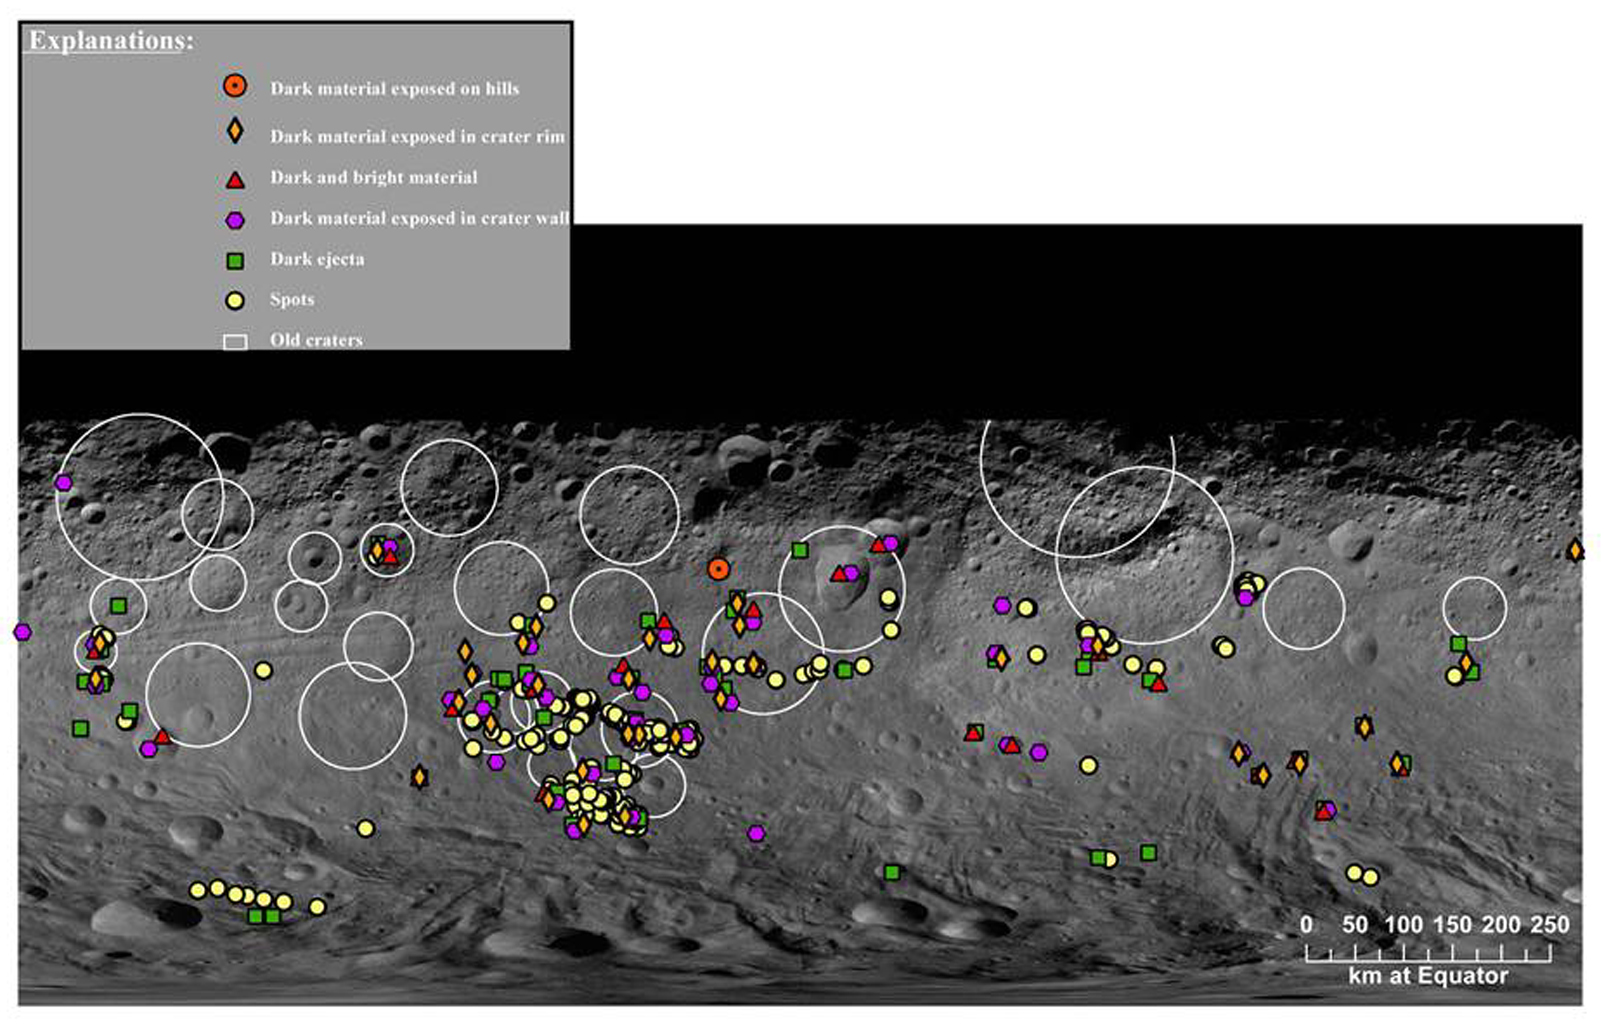 Map of Dark Materials on Vesta